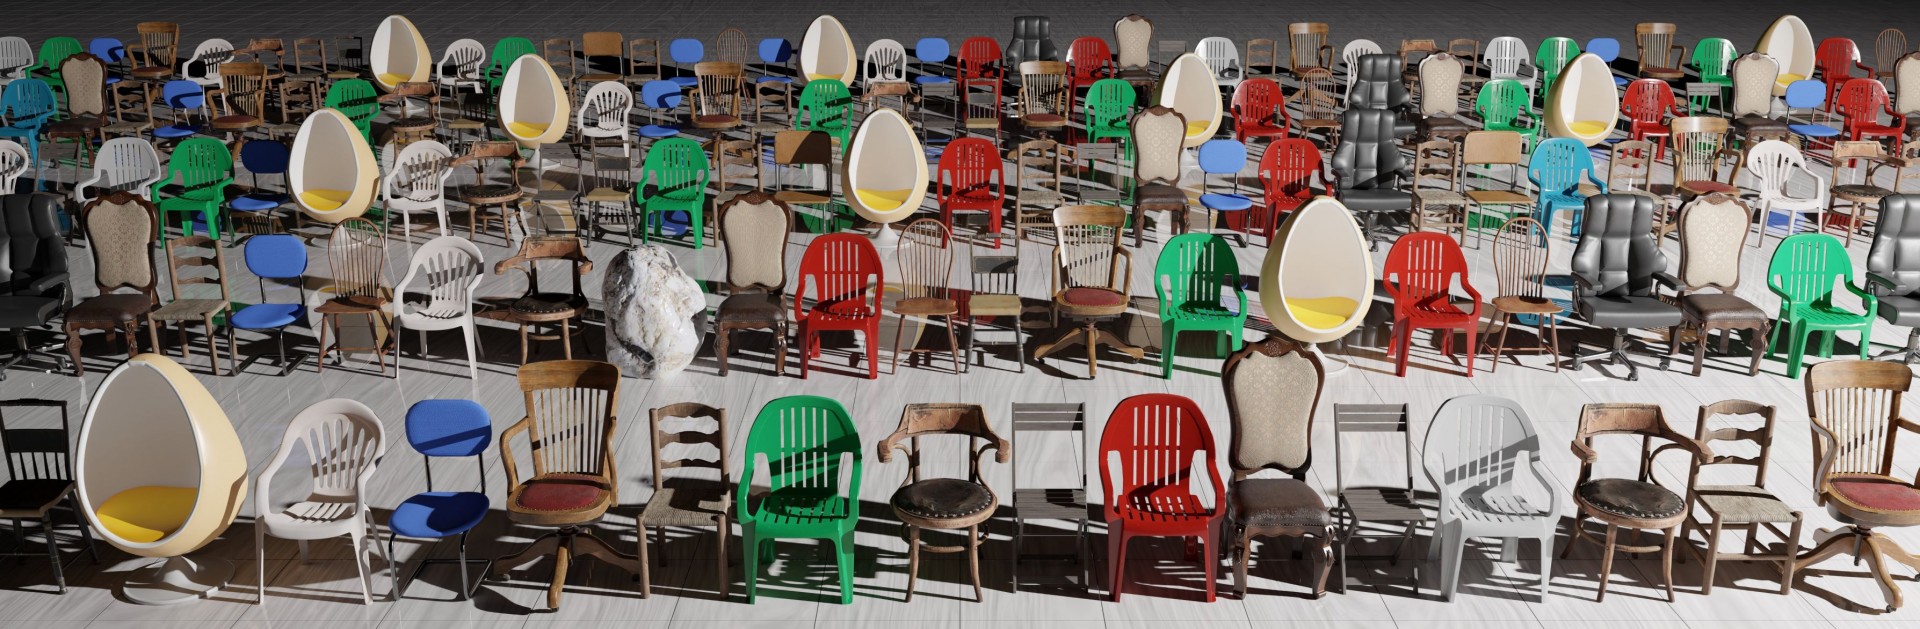 01 - Les chaises